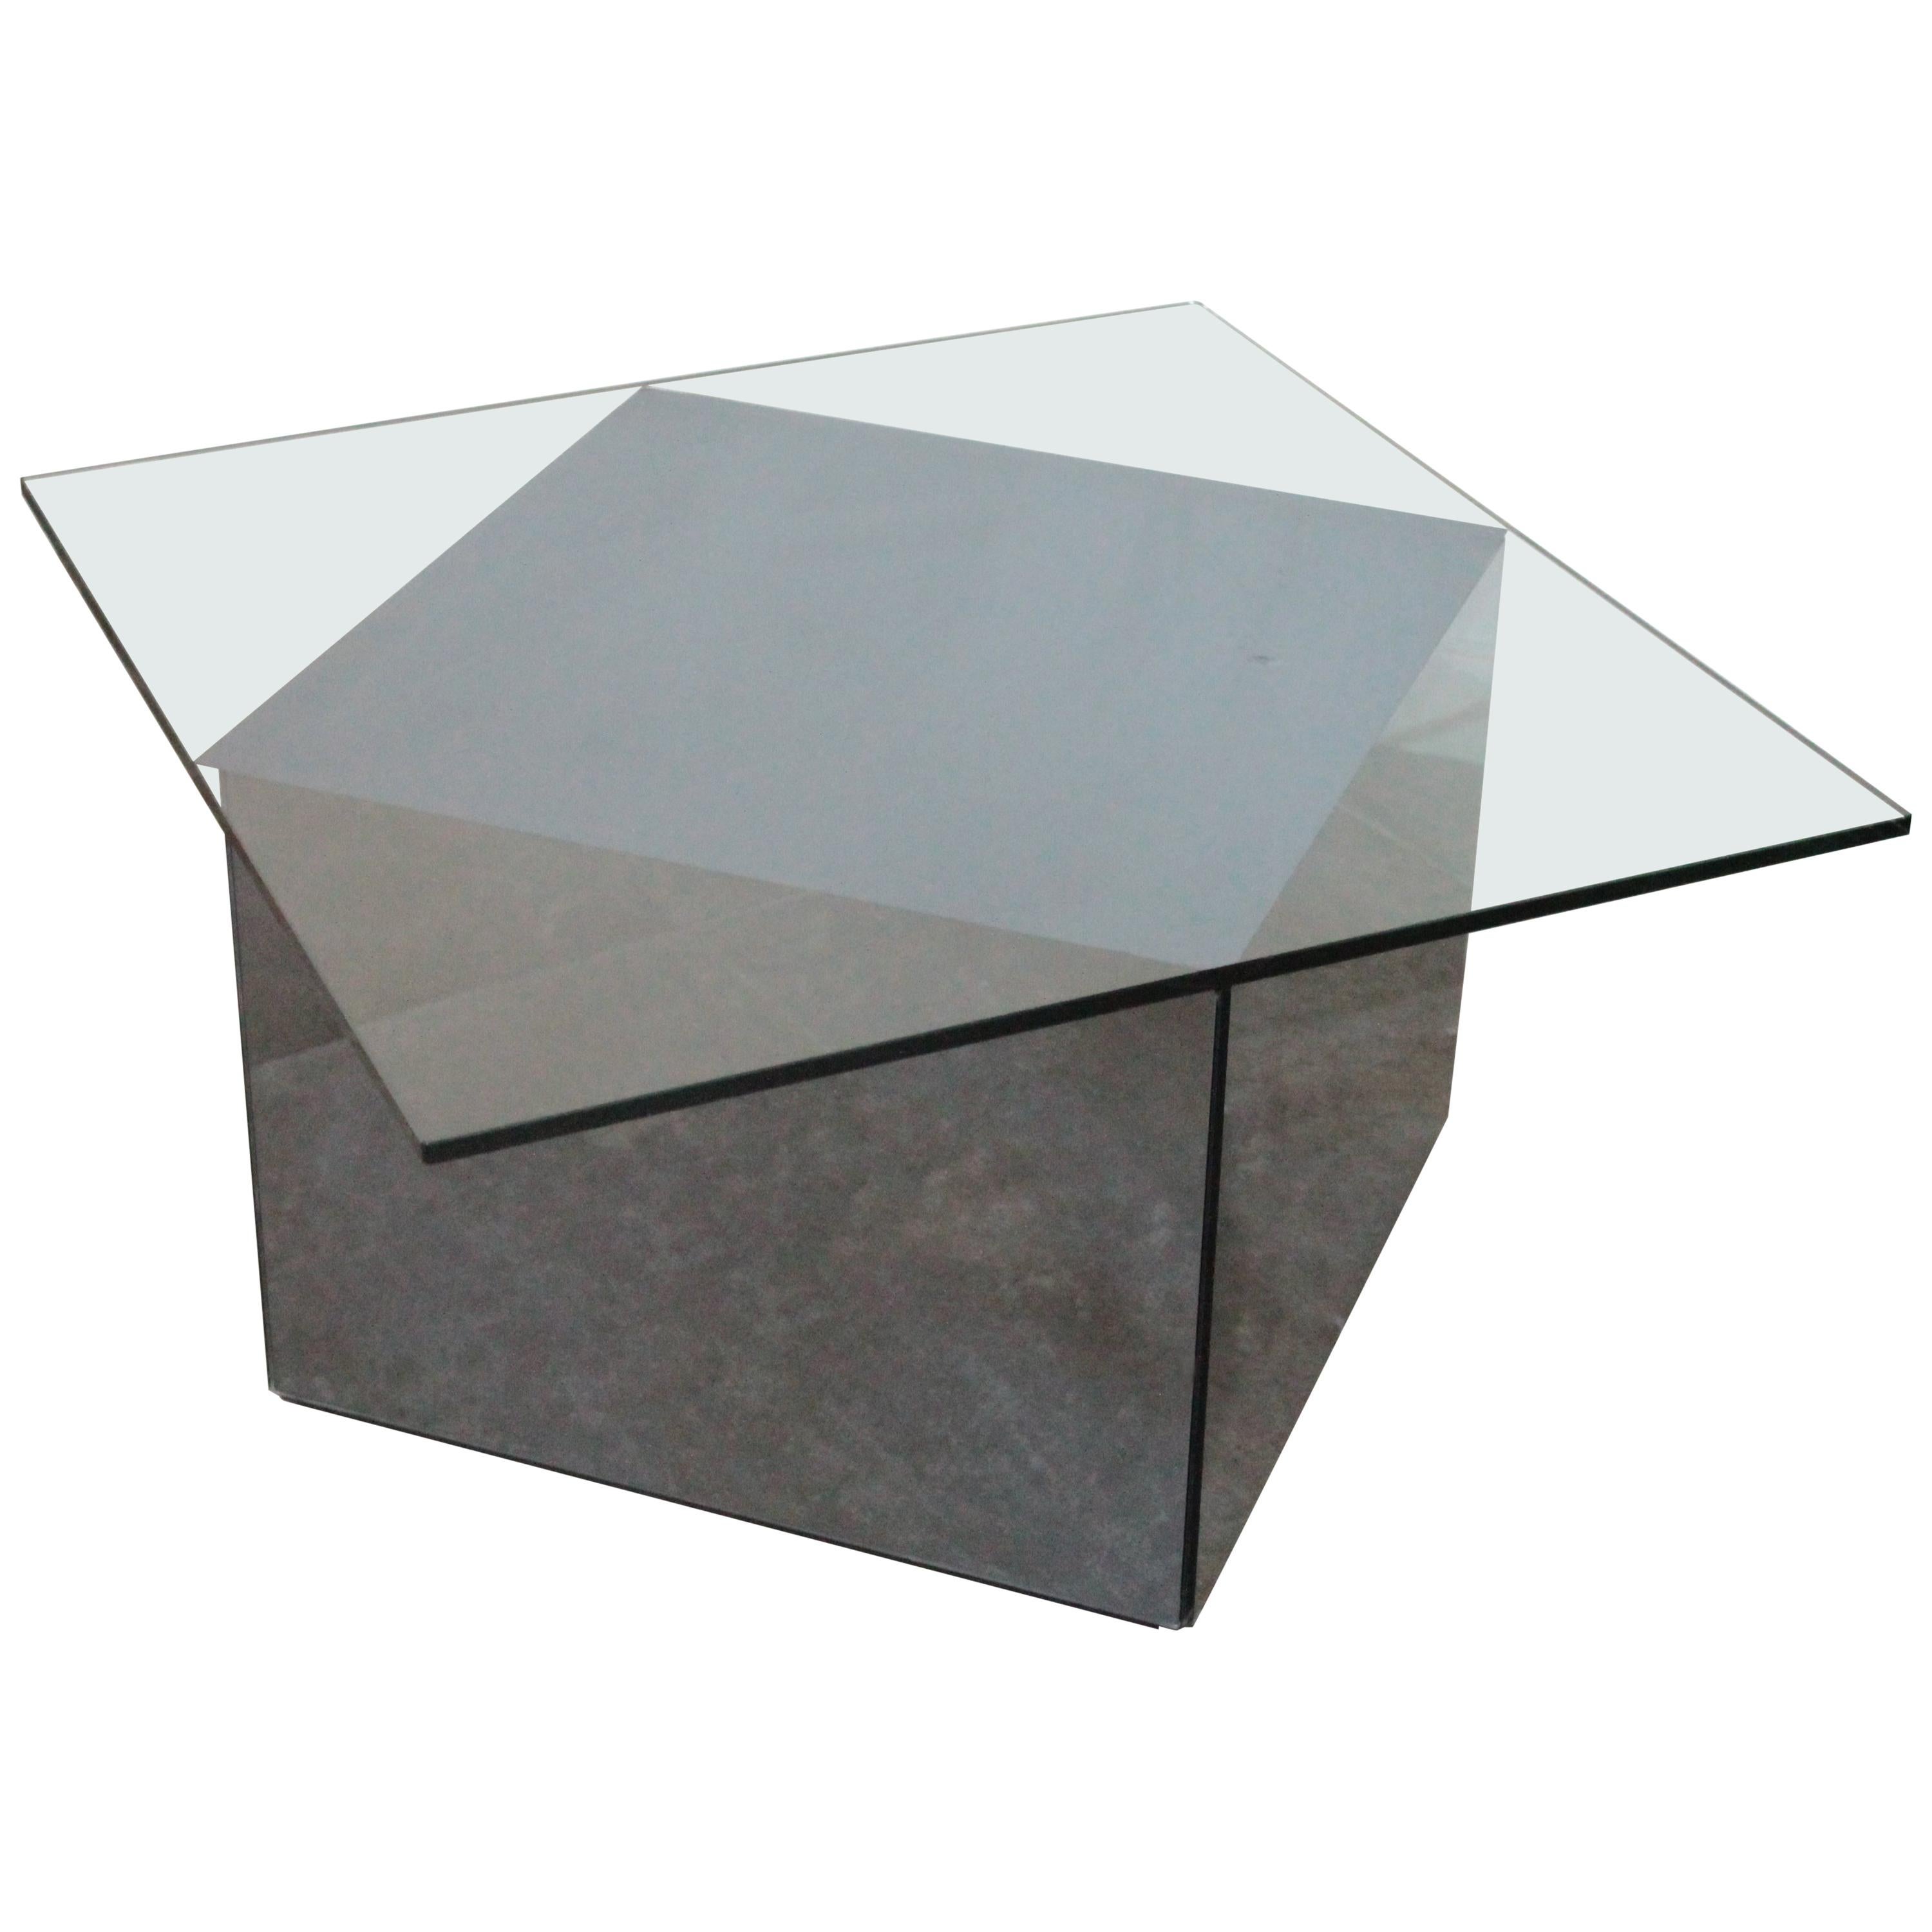 Rare Asymmetrical Coffee Table "Blok" by Nanda Vigo for Acerbis, 1970s  For Sale